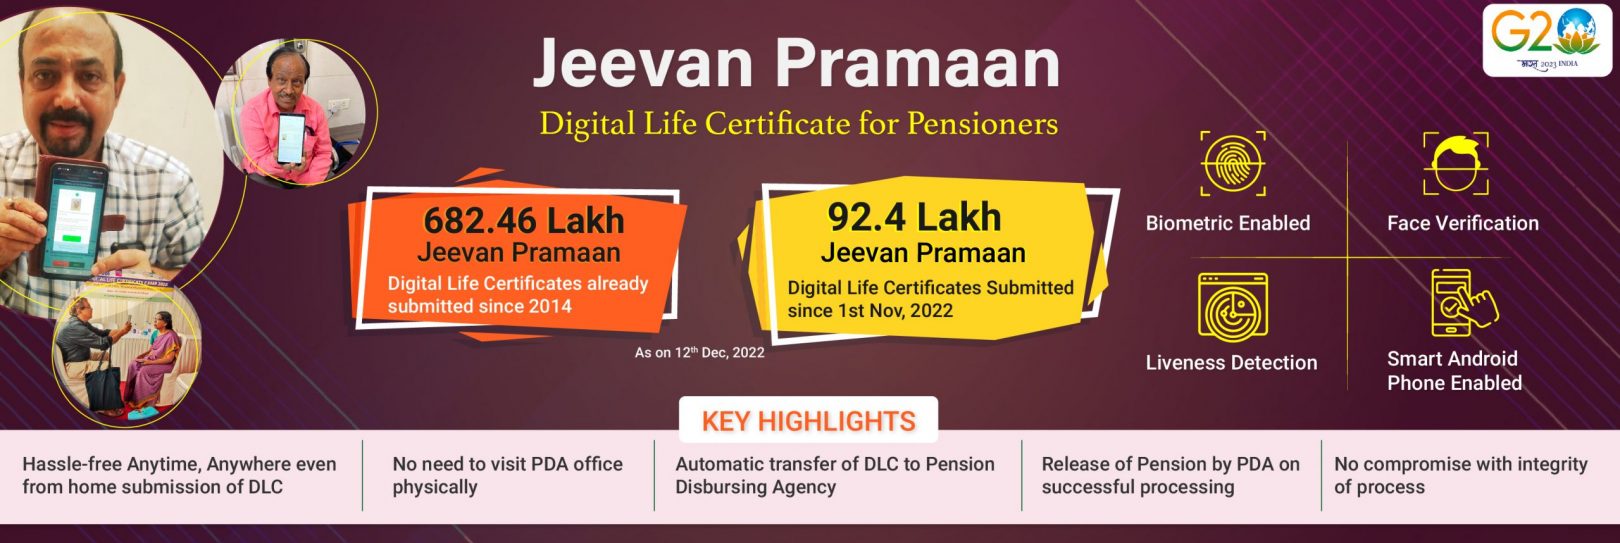 Jeevan Pramaan, Digital Life Certificate for Pensioners